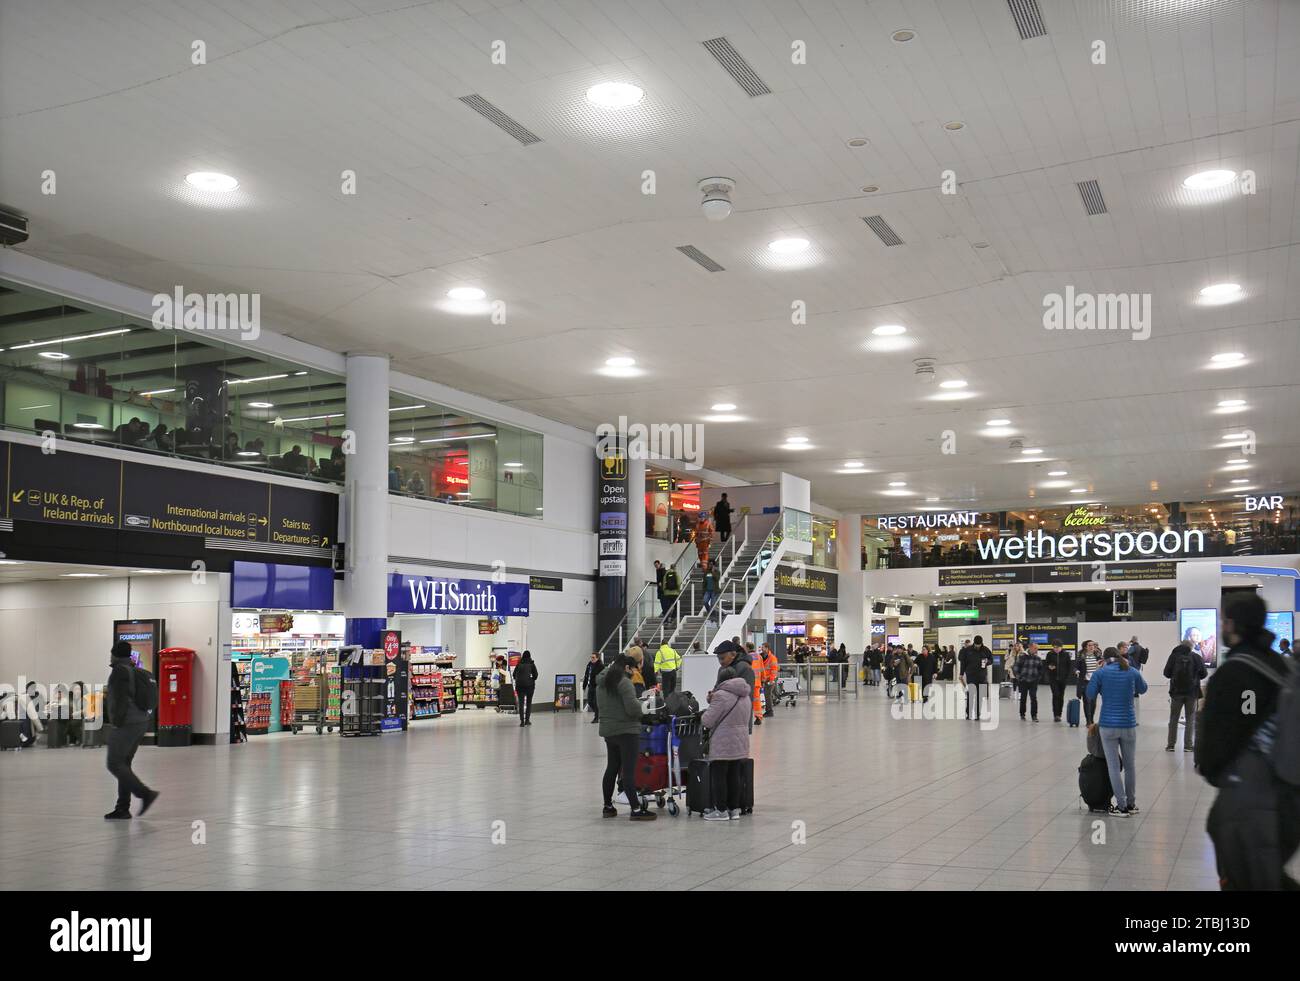 Flughafen Gatwick, Südterminal, Check-in-Bereich. Zeigt Passagiere, Abfahrtstafeln, Geschäfte und Restaurants. Stockfoto